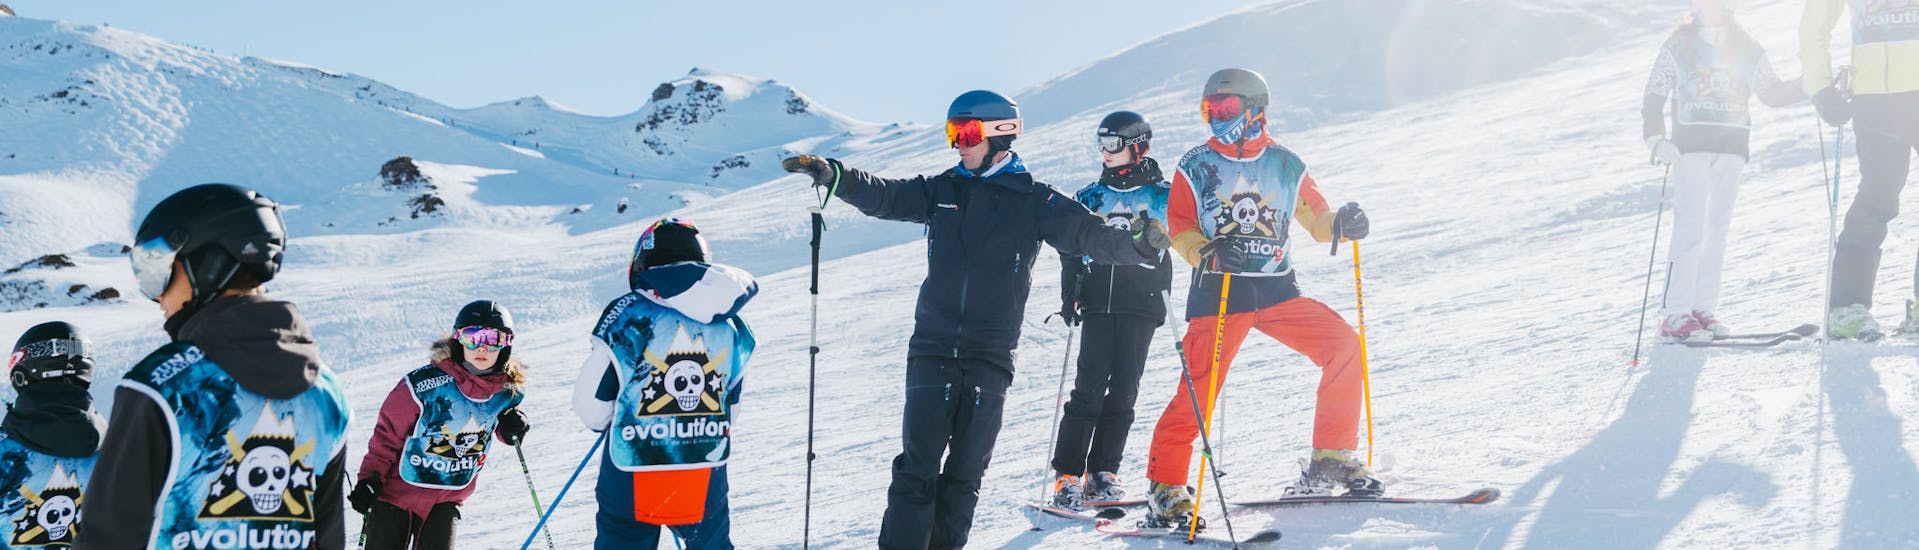 Lezioni di sci per bambini a partire da 6 anni con Evolution 2 Saint-Gervais.